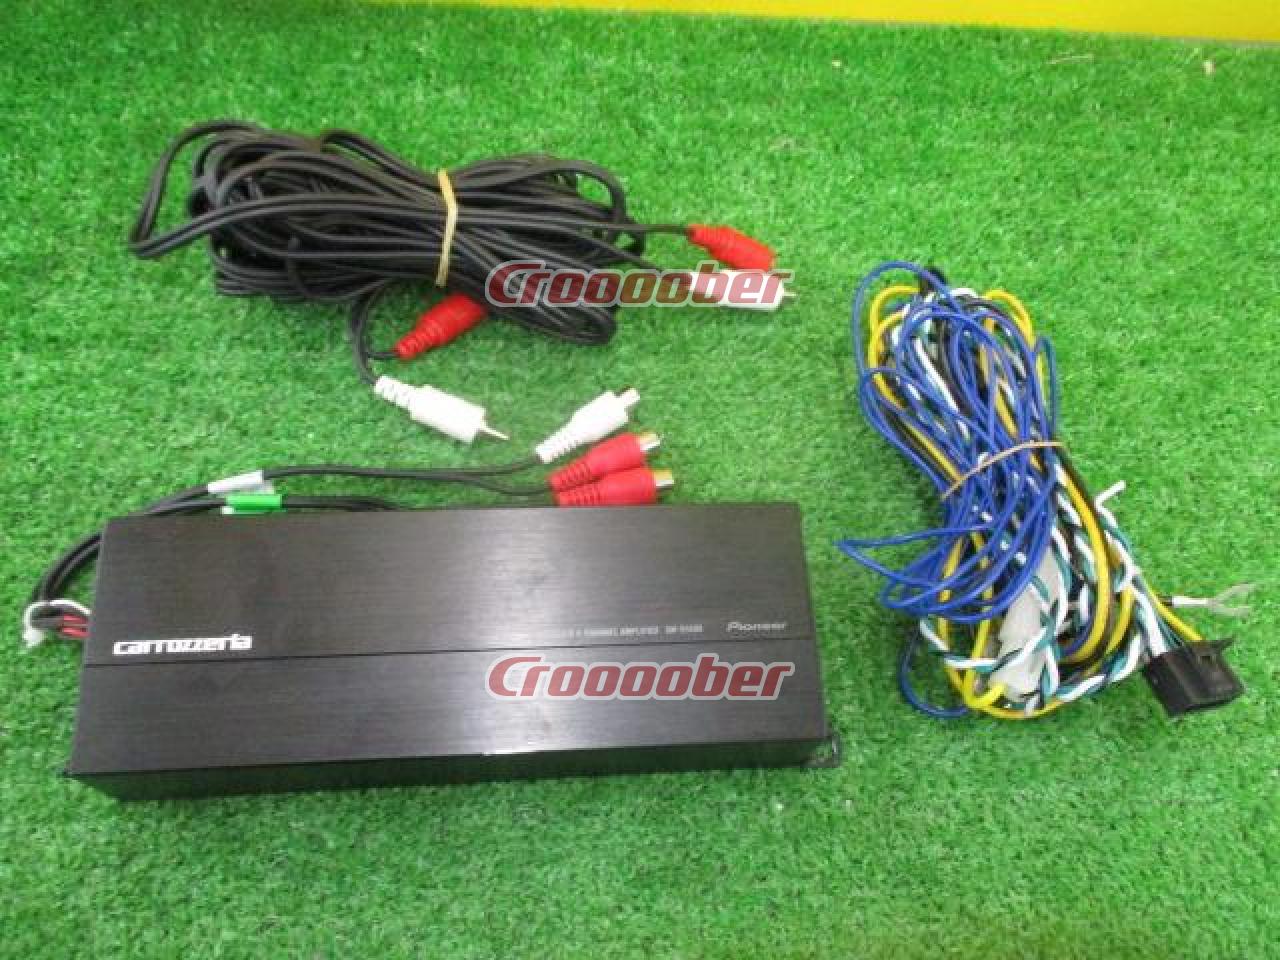 Carrozzeria GM-D1400-2 | Amplifier | Croooober